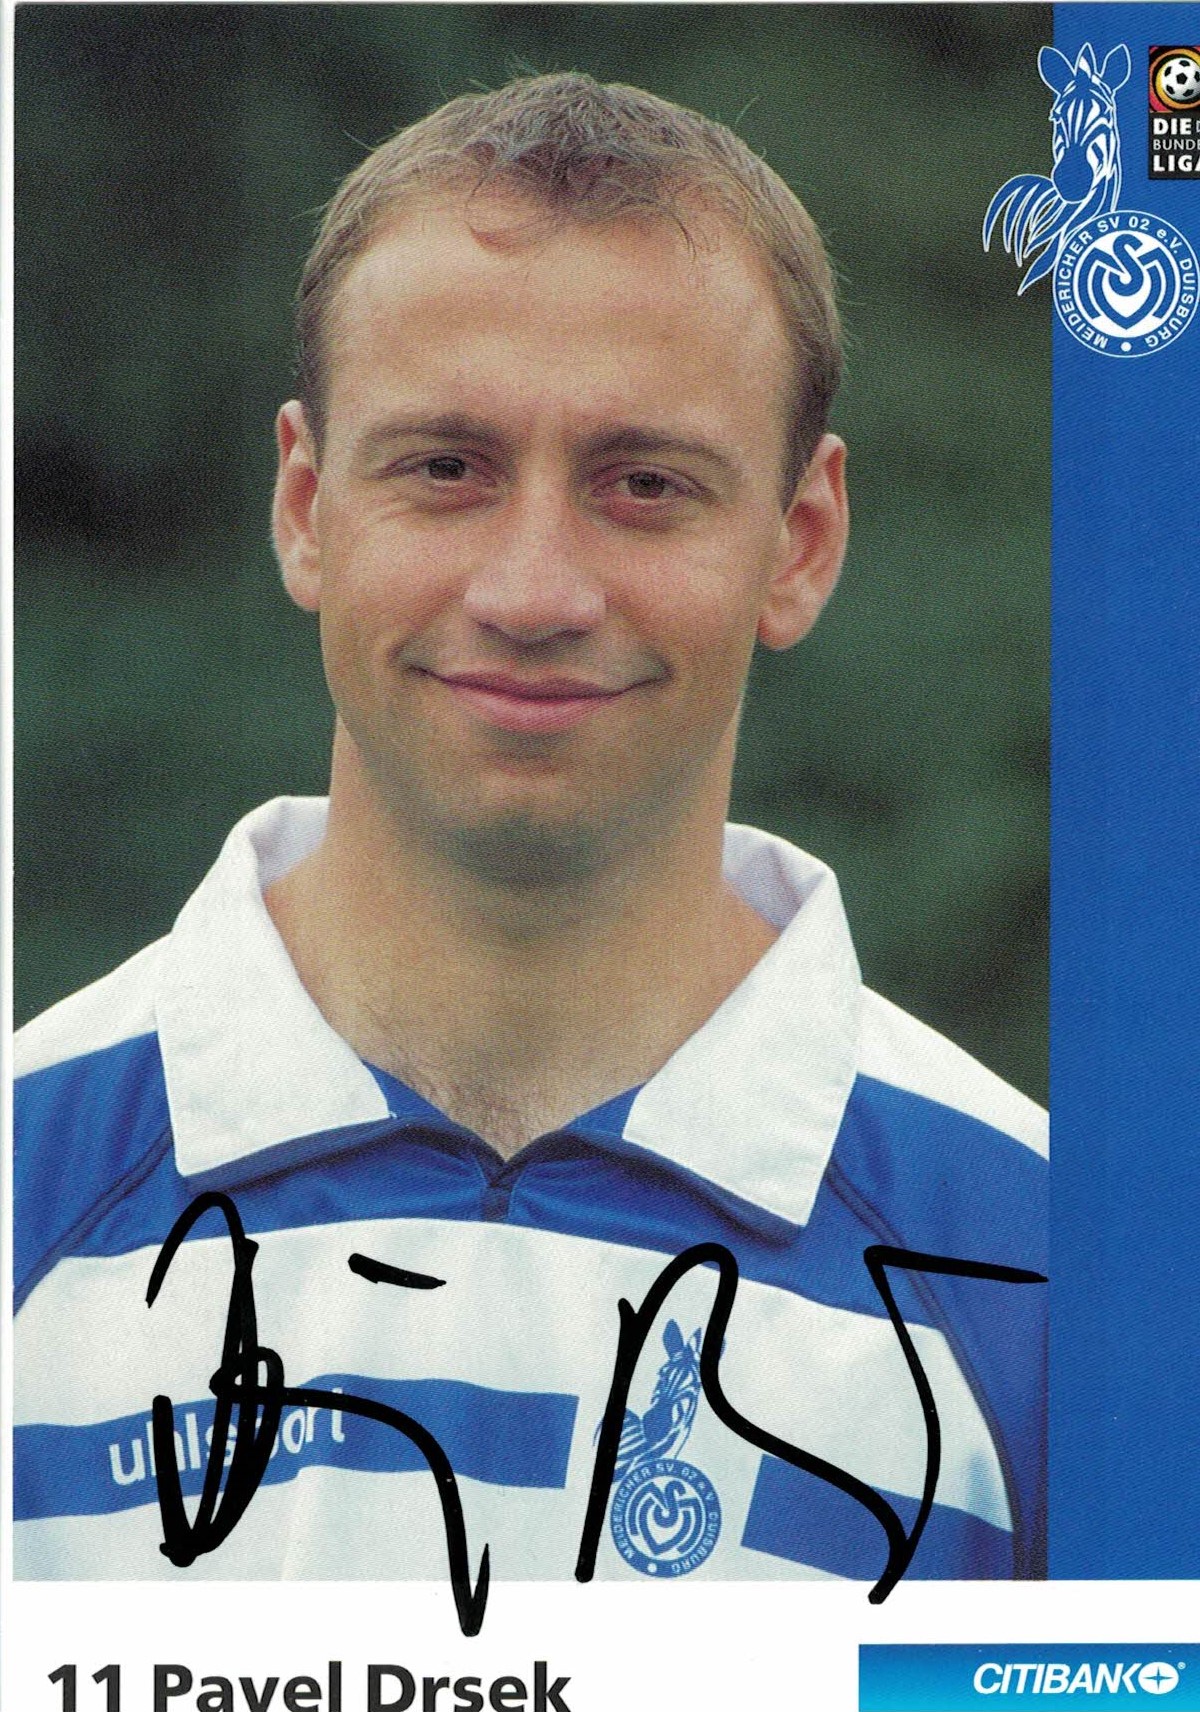 Pavel Drsek MSV Duisburg 2002/03 Podpisova karta autogram